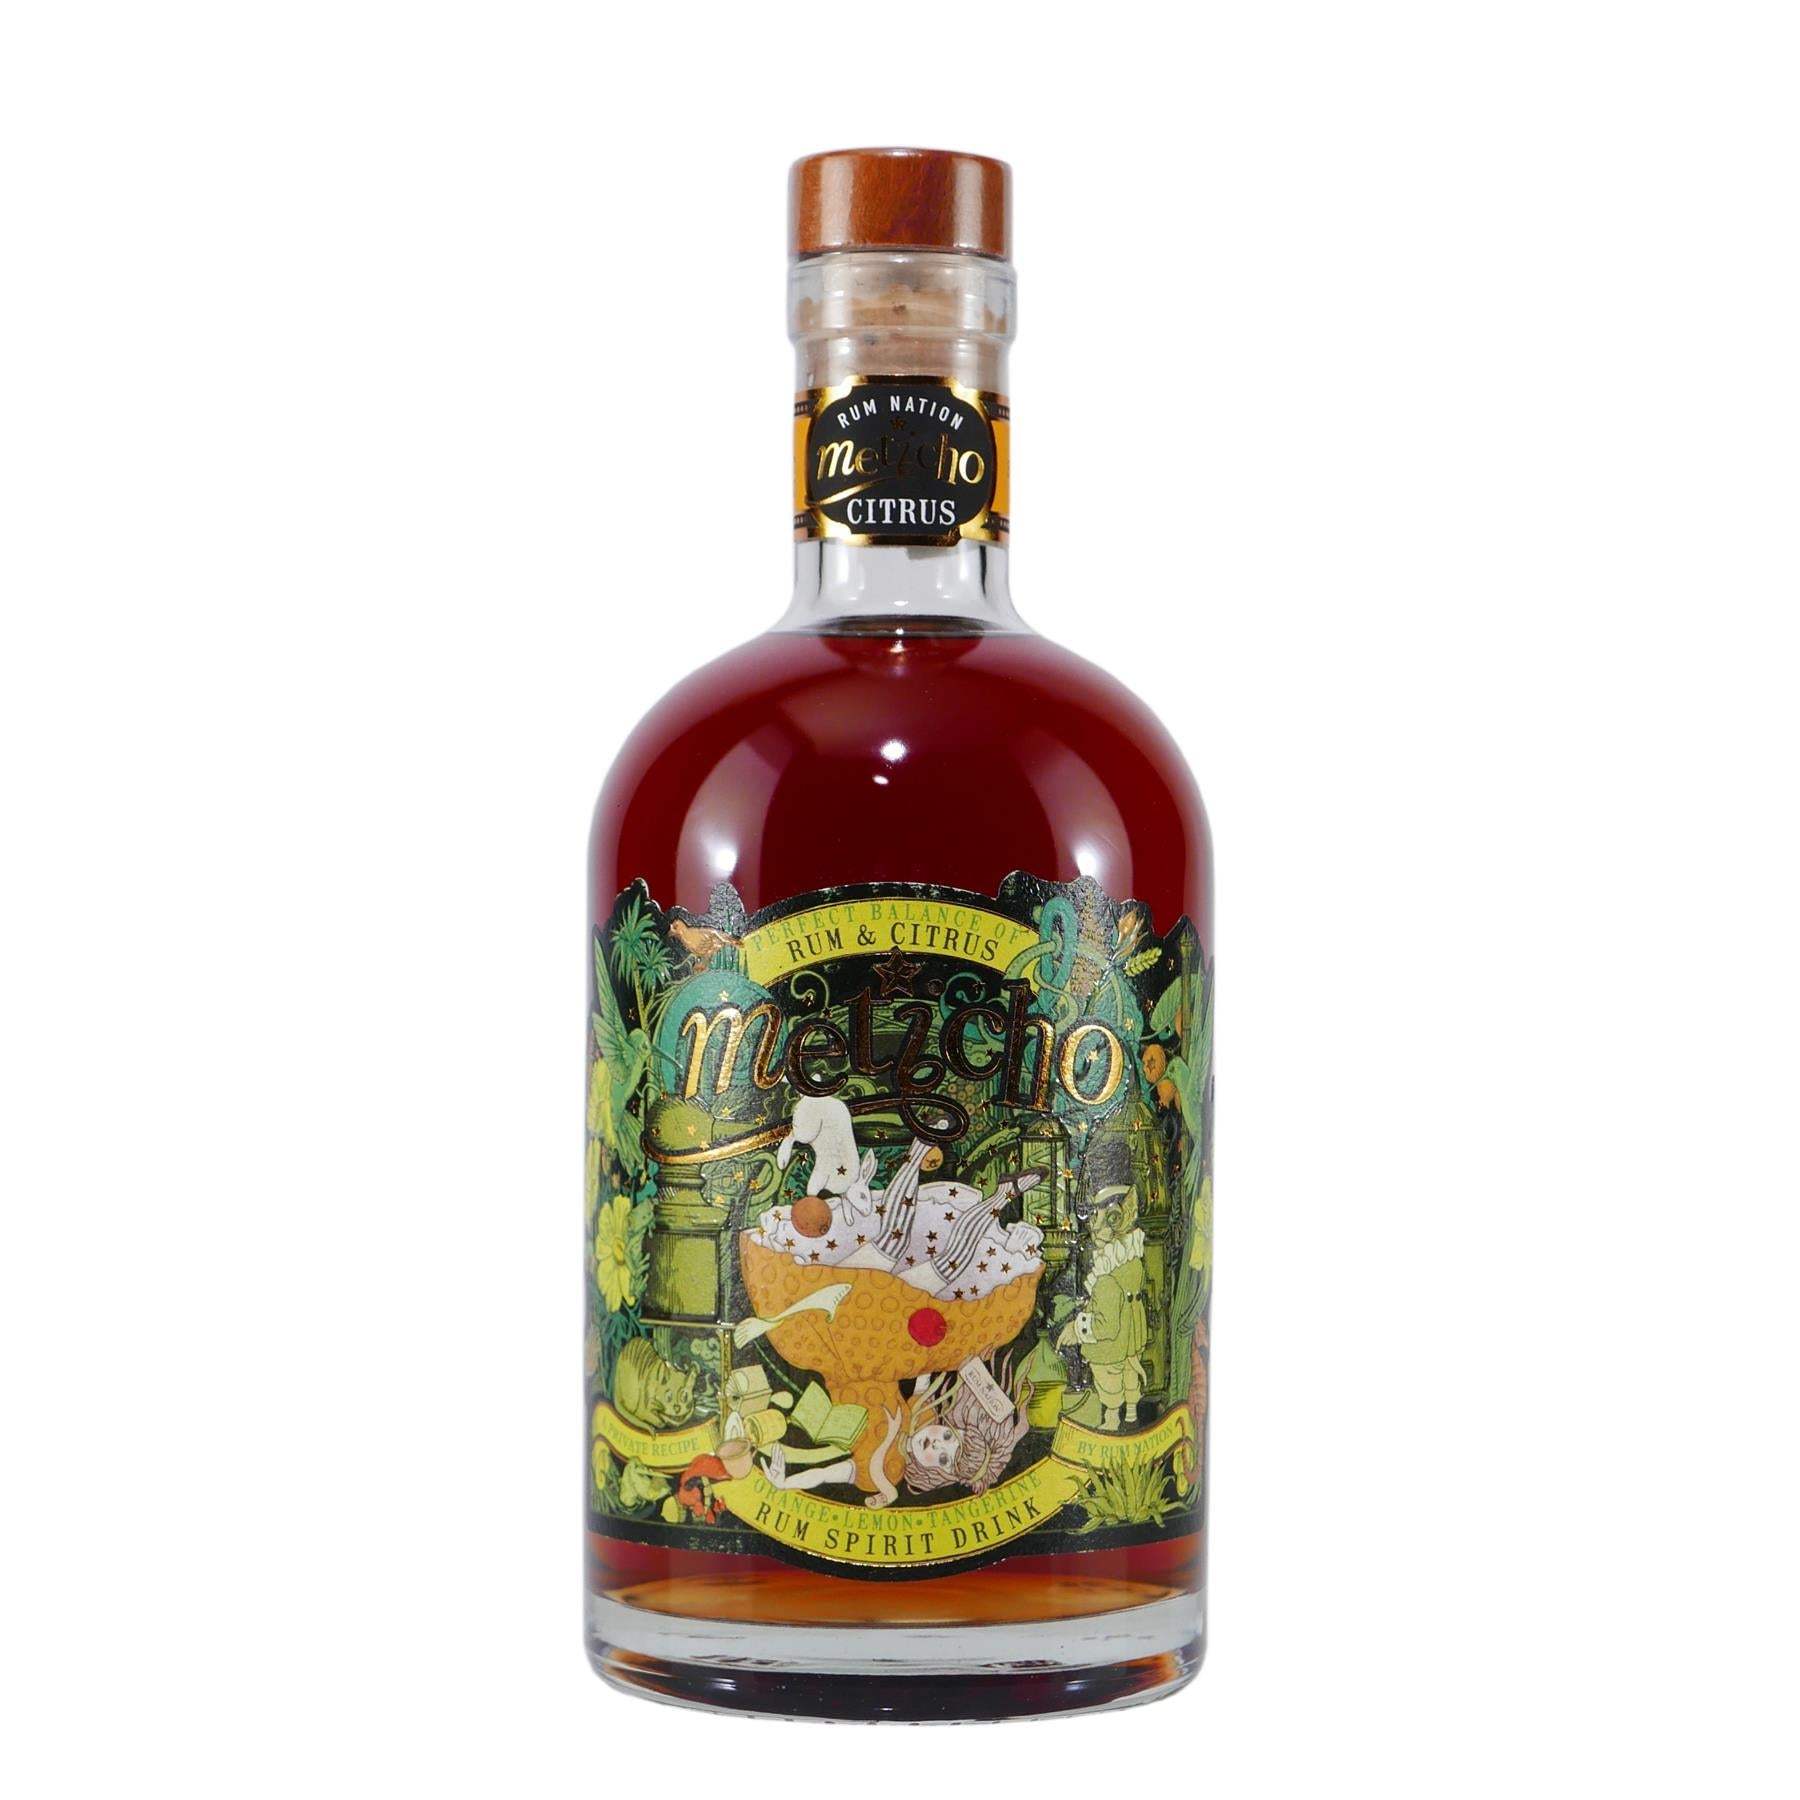 Meticho Rum & Citrus Spirit Drink